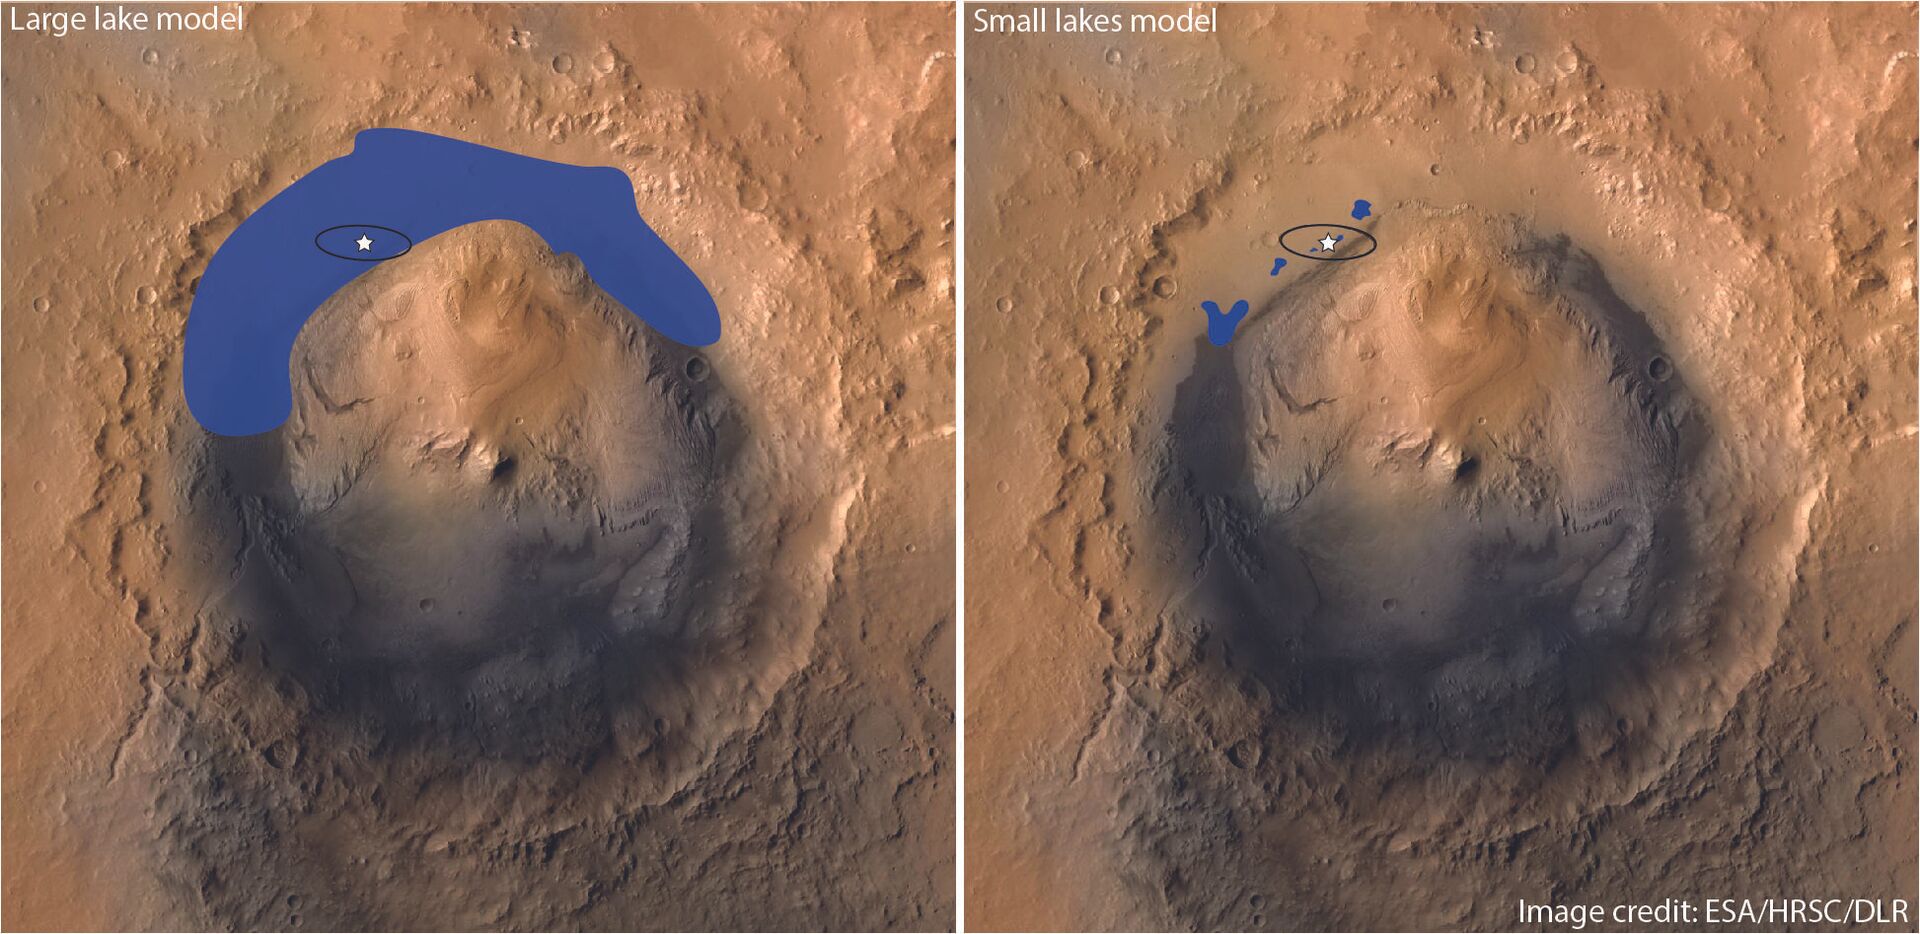 Água em Marte? Rover da NASA achou sedimentos, mas não evidências de lago antigo, afirma estudo - Sputnik Brasil, 1920, 09.08.2021